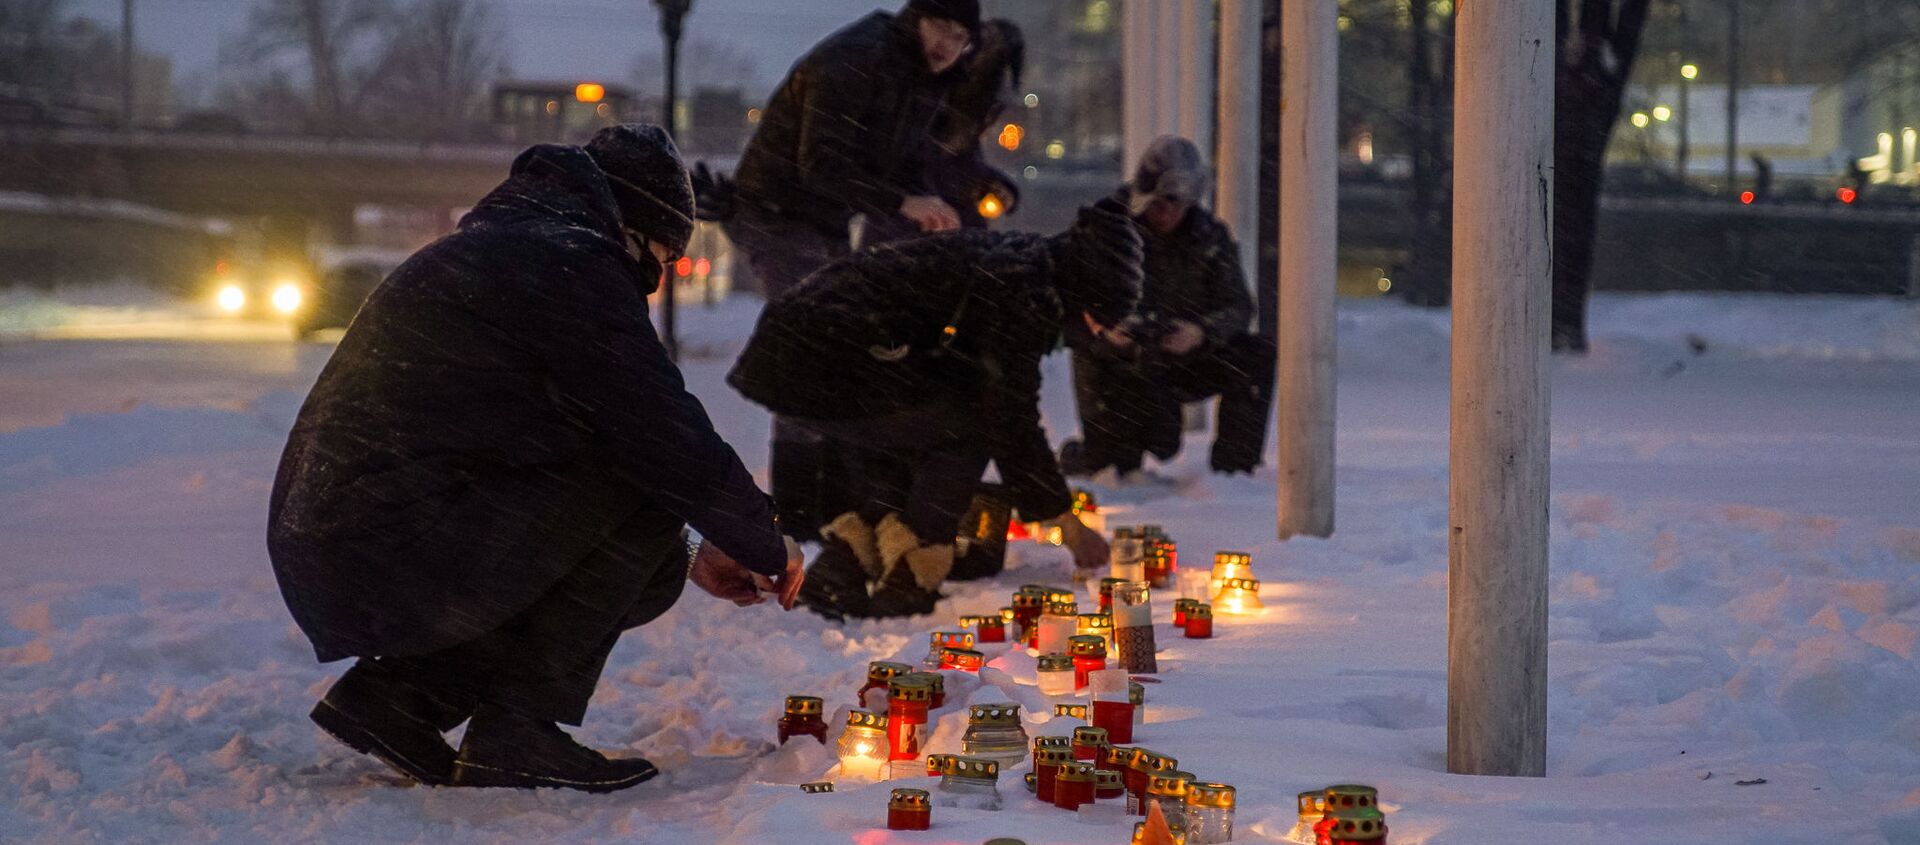 Рижане зажигают свечи у Рижского замка, обращая внимание президента Латвии на трудное положение населения страны из-за введенных ограничений в связи с пандемией COVID-19 - Sputnik Латвия, 1920, 11.02.2021